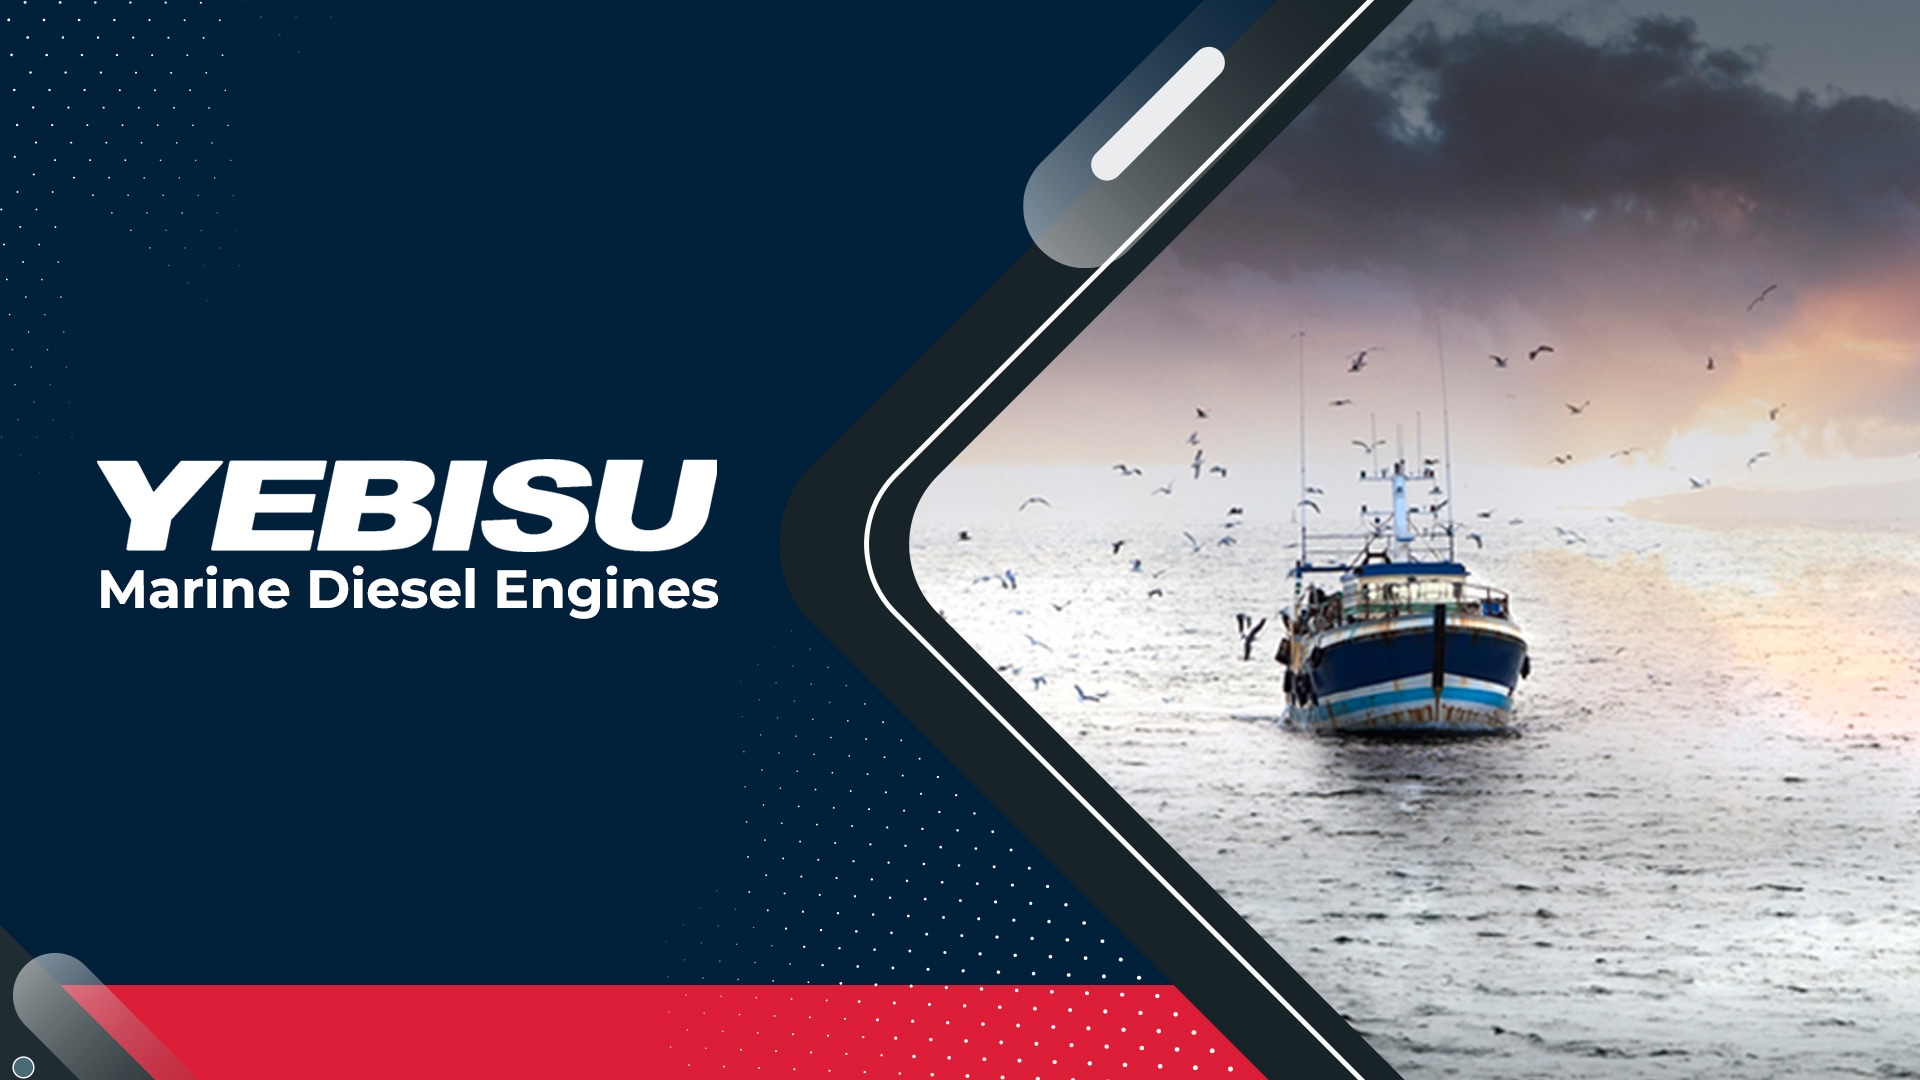 YEBISU Marine Diesel Engines